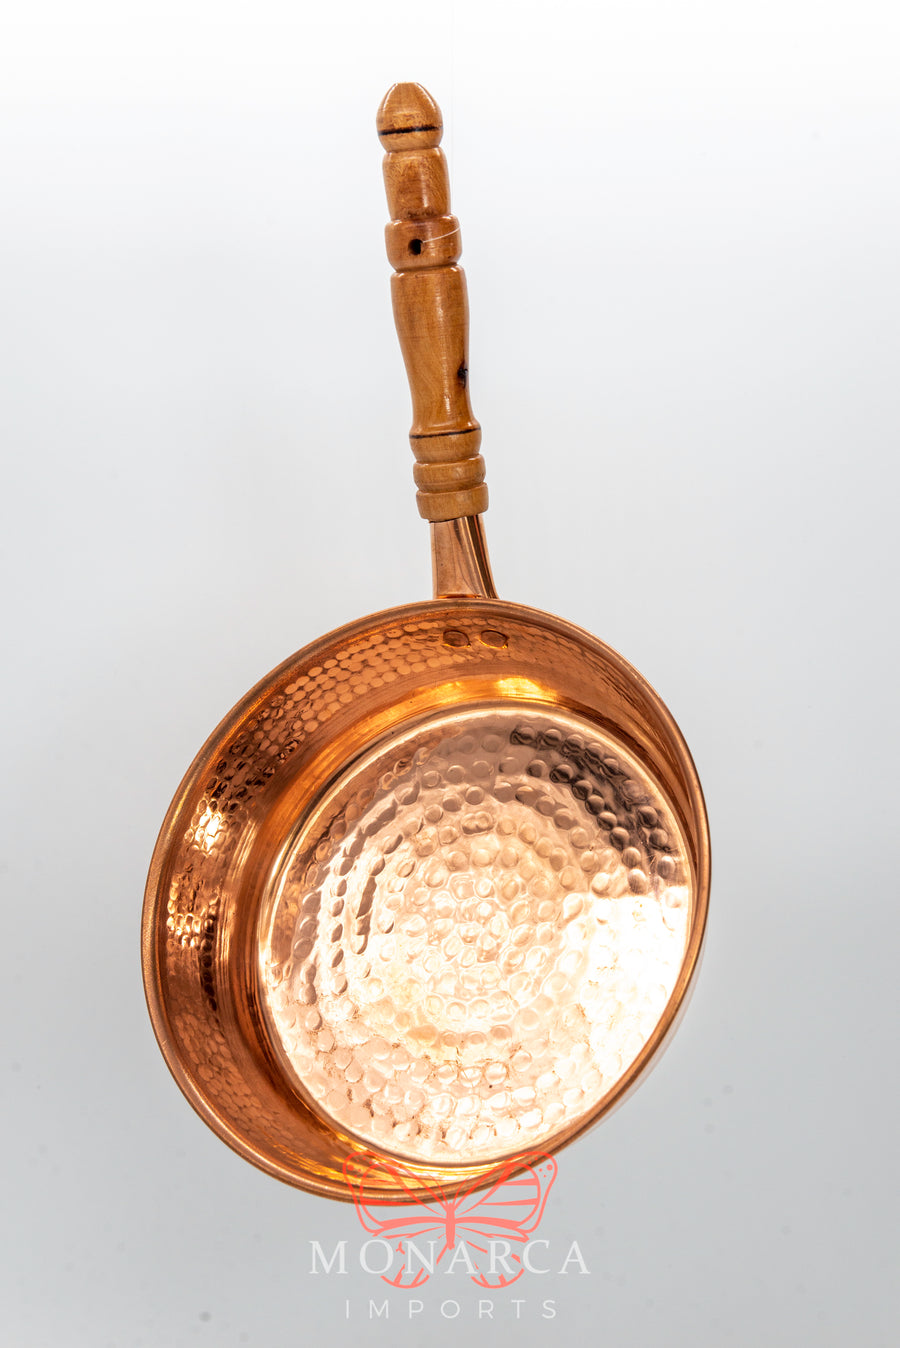 3-piece copper pan set - Santa Clara del Cobre